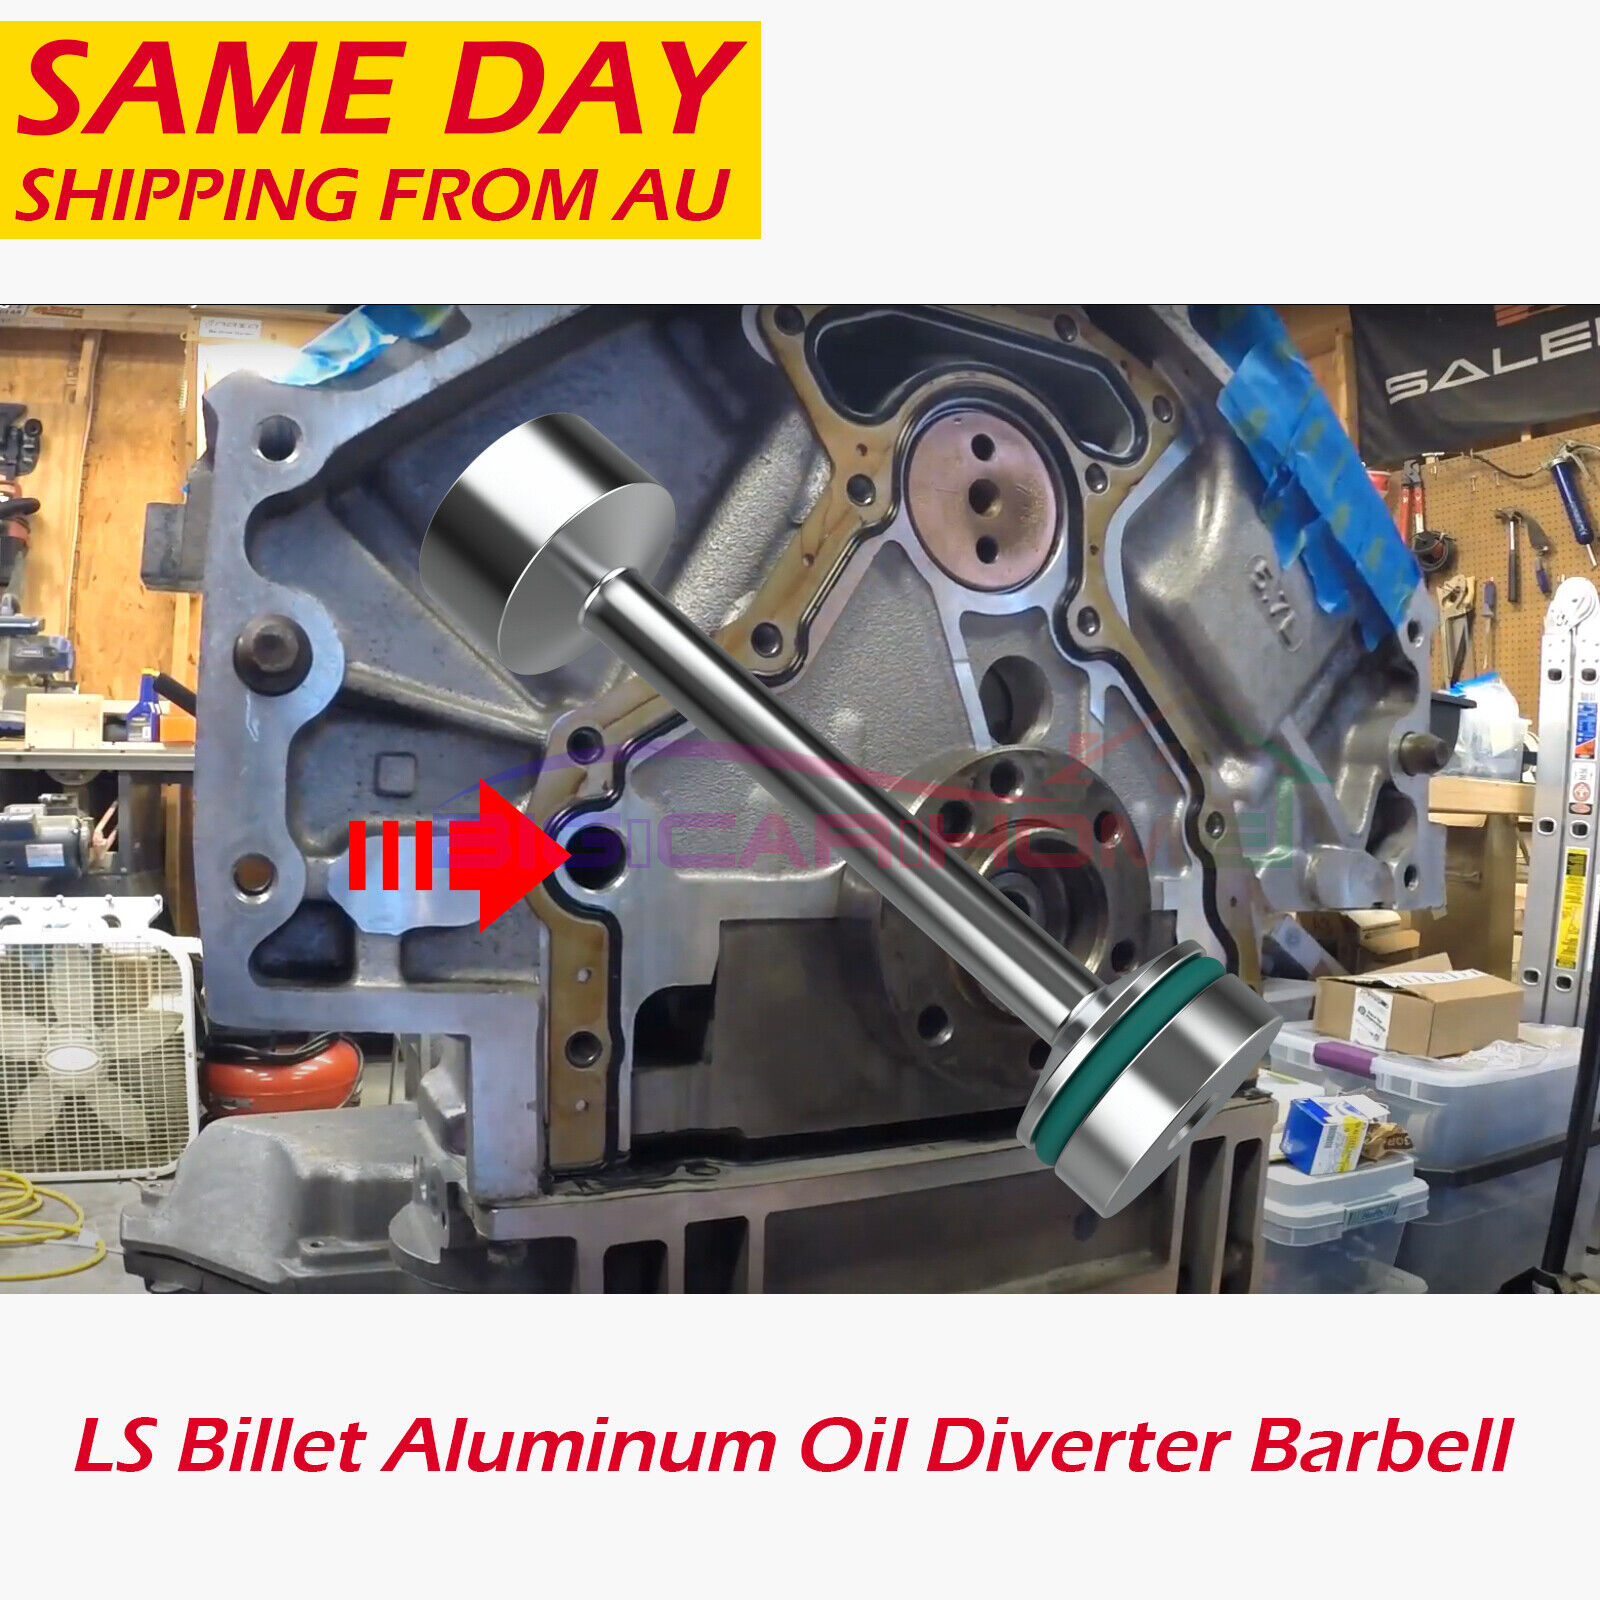 LS Billet Aluminum Oil Diverter Barbell 4.8 5.3 5.7 6.0 6.2 7.0 LS1 LS2 LS3 LQ4